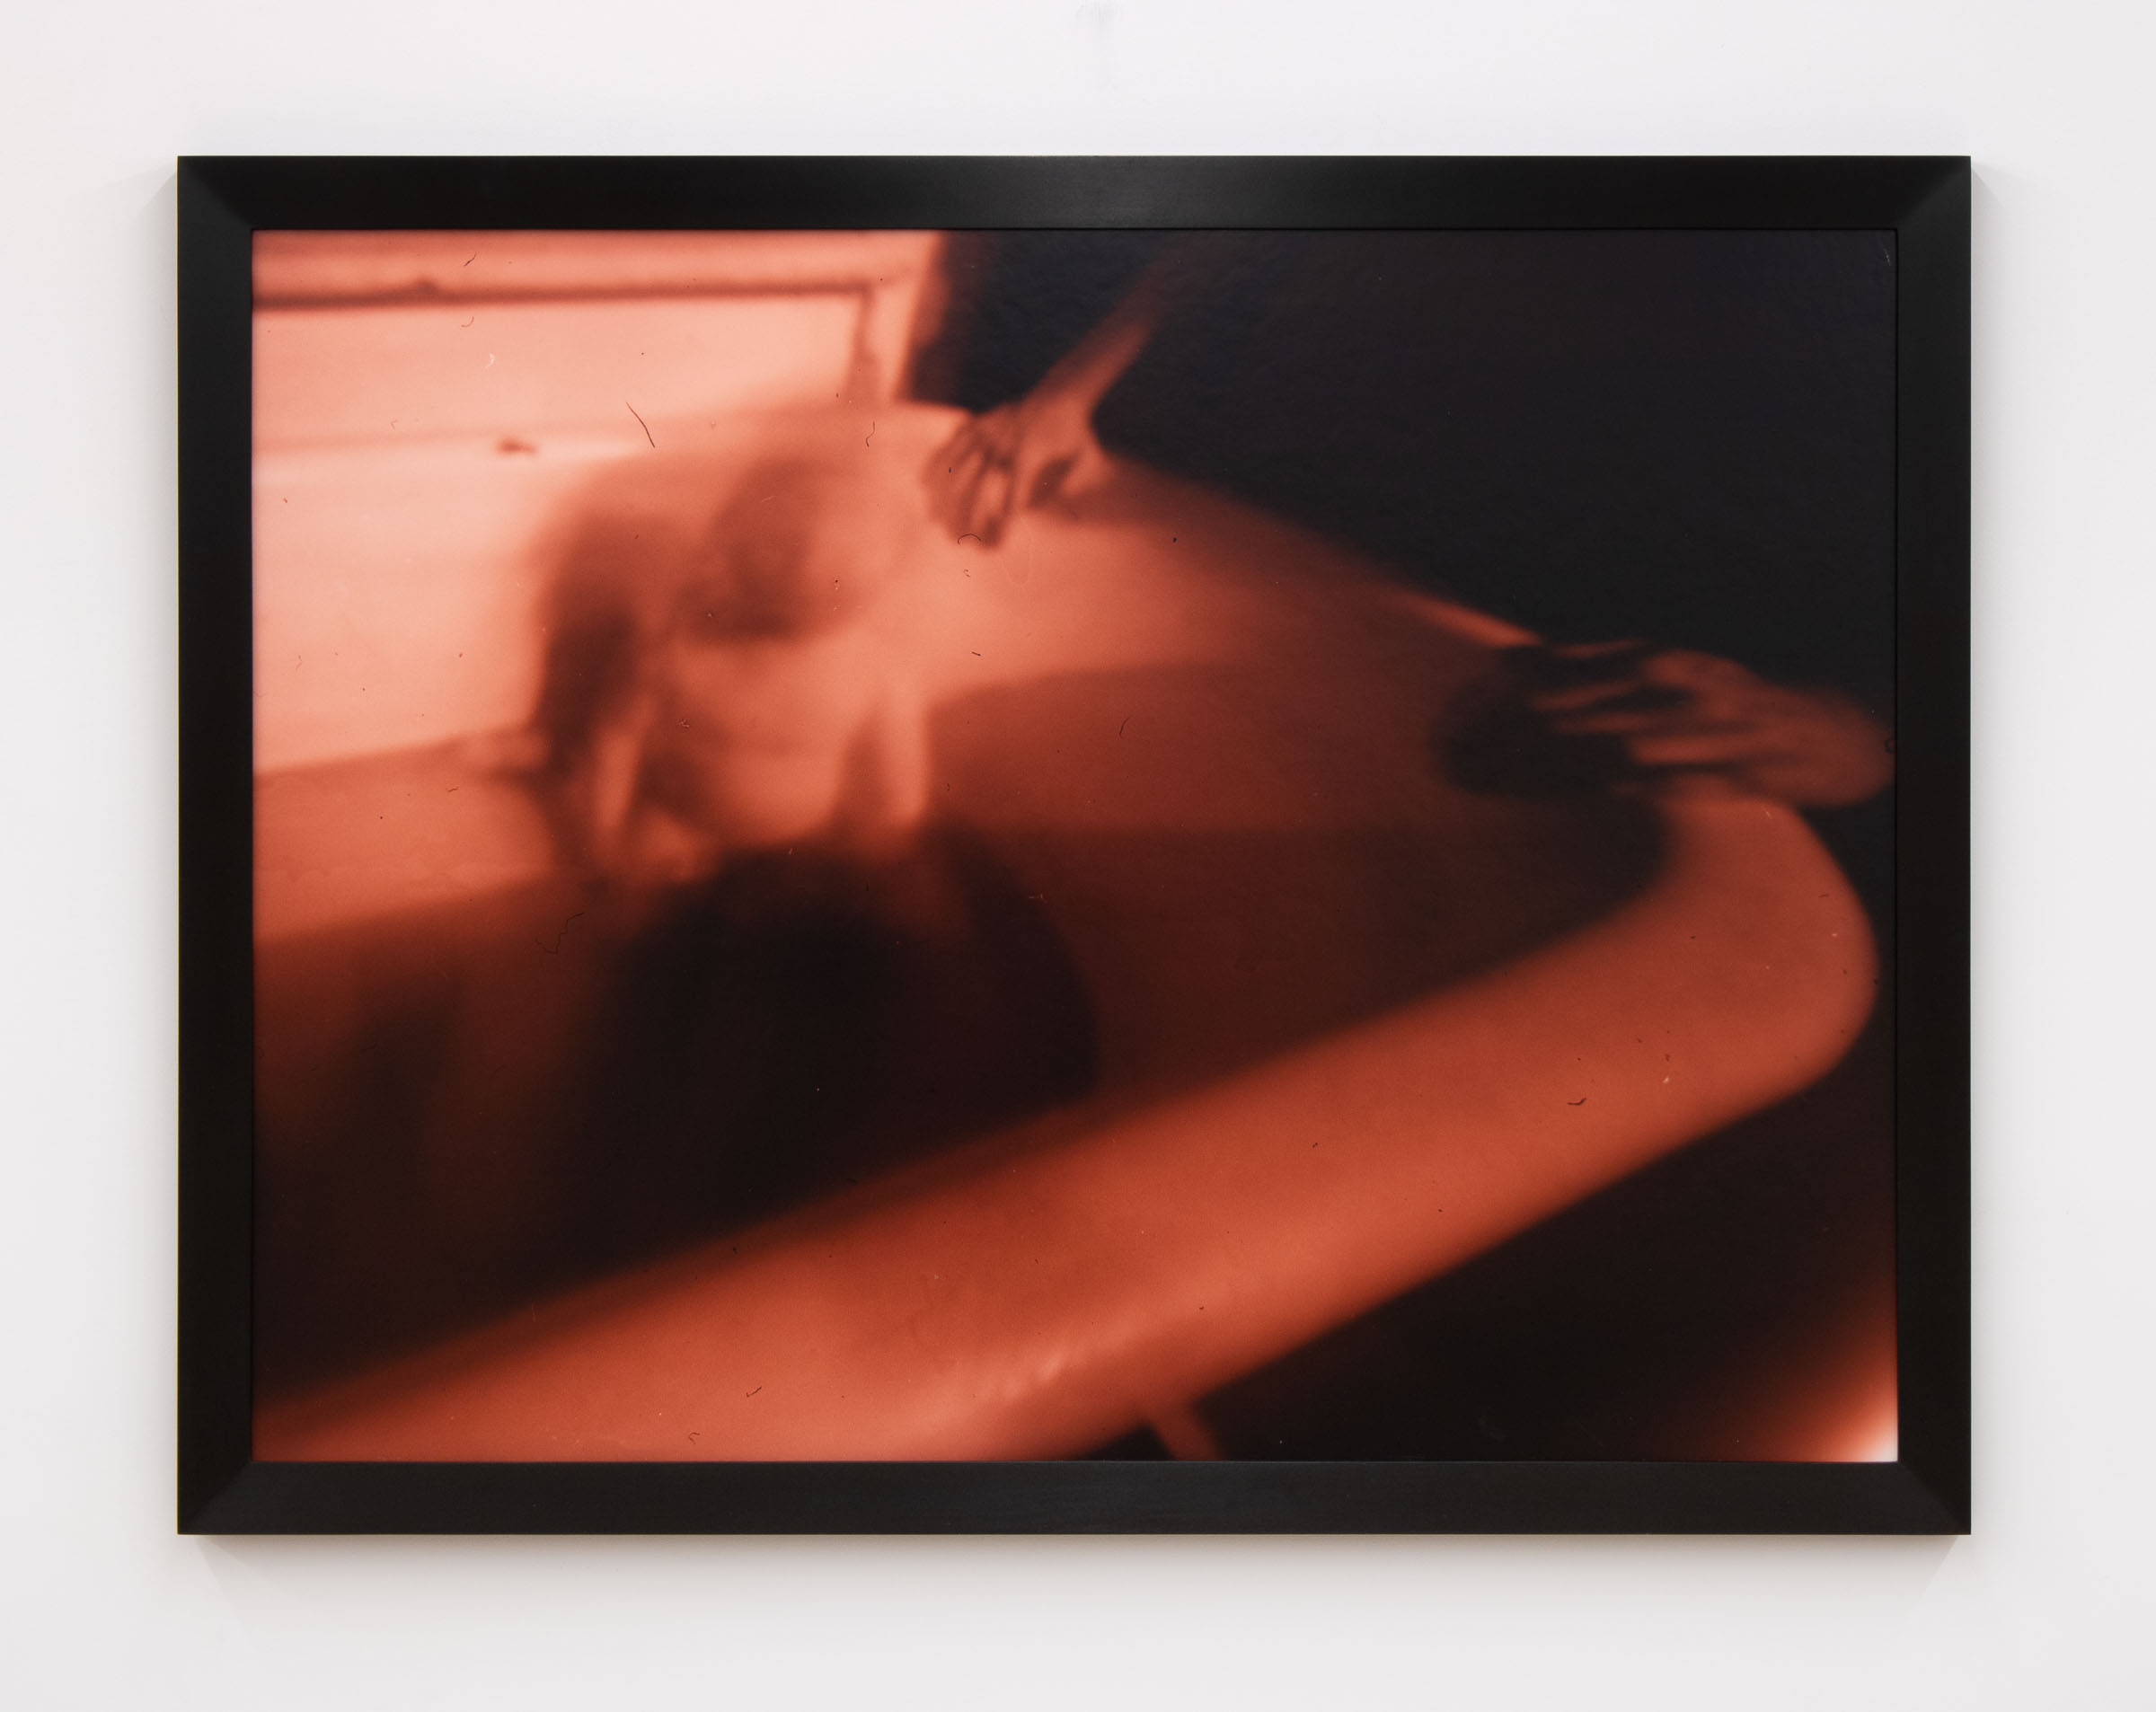 Barbara Ess, Baby in Bathtub, 1986 C-print, 32 3/4 x 42 5/8 x 1 1/8 in.